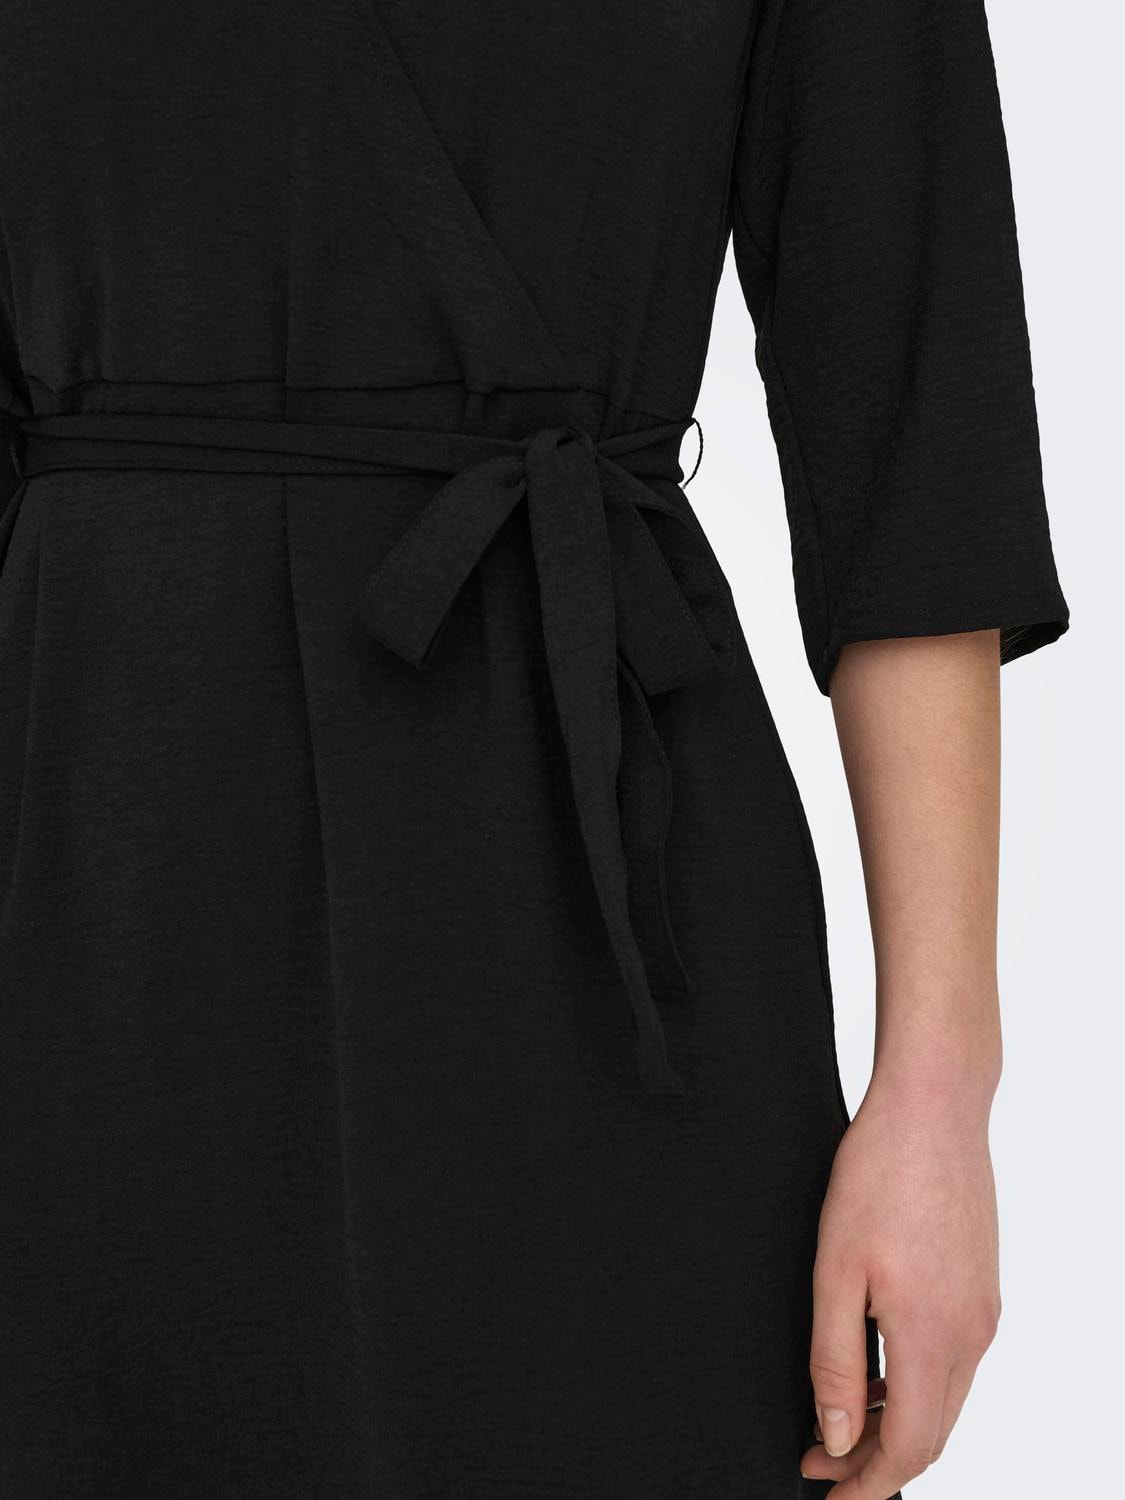 ONLY Wrap Midi dress -Black - 15207813